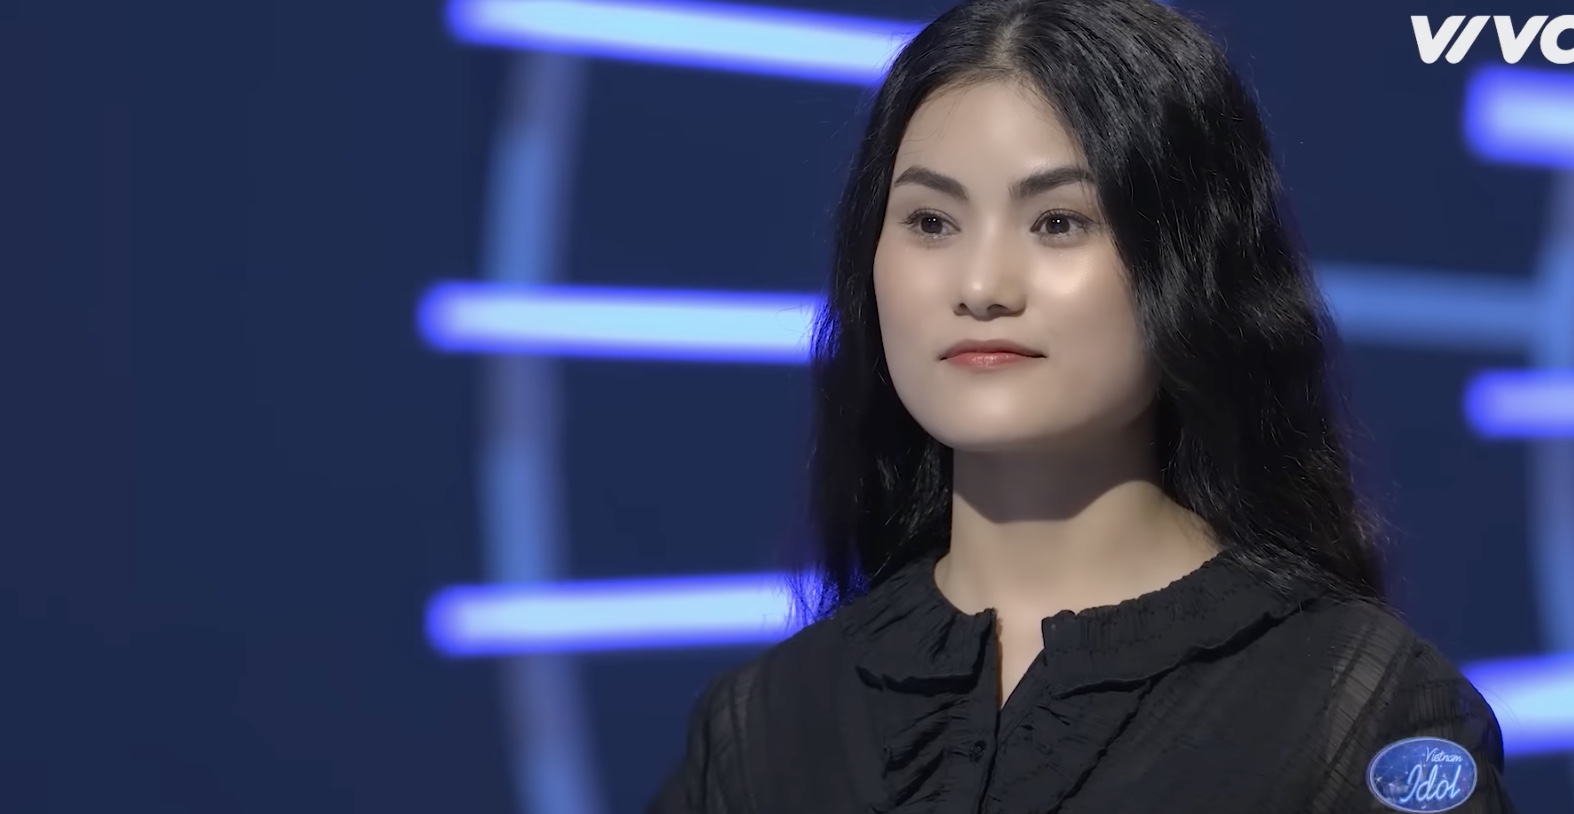 Thí sinh nhận vé bạc của Vietnam Idol 2023 ám chỉ chương trình thiếu công bằng? - Ảnh 1.